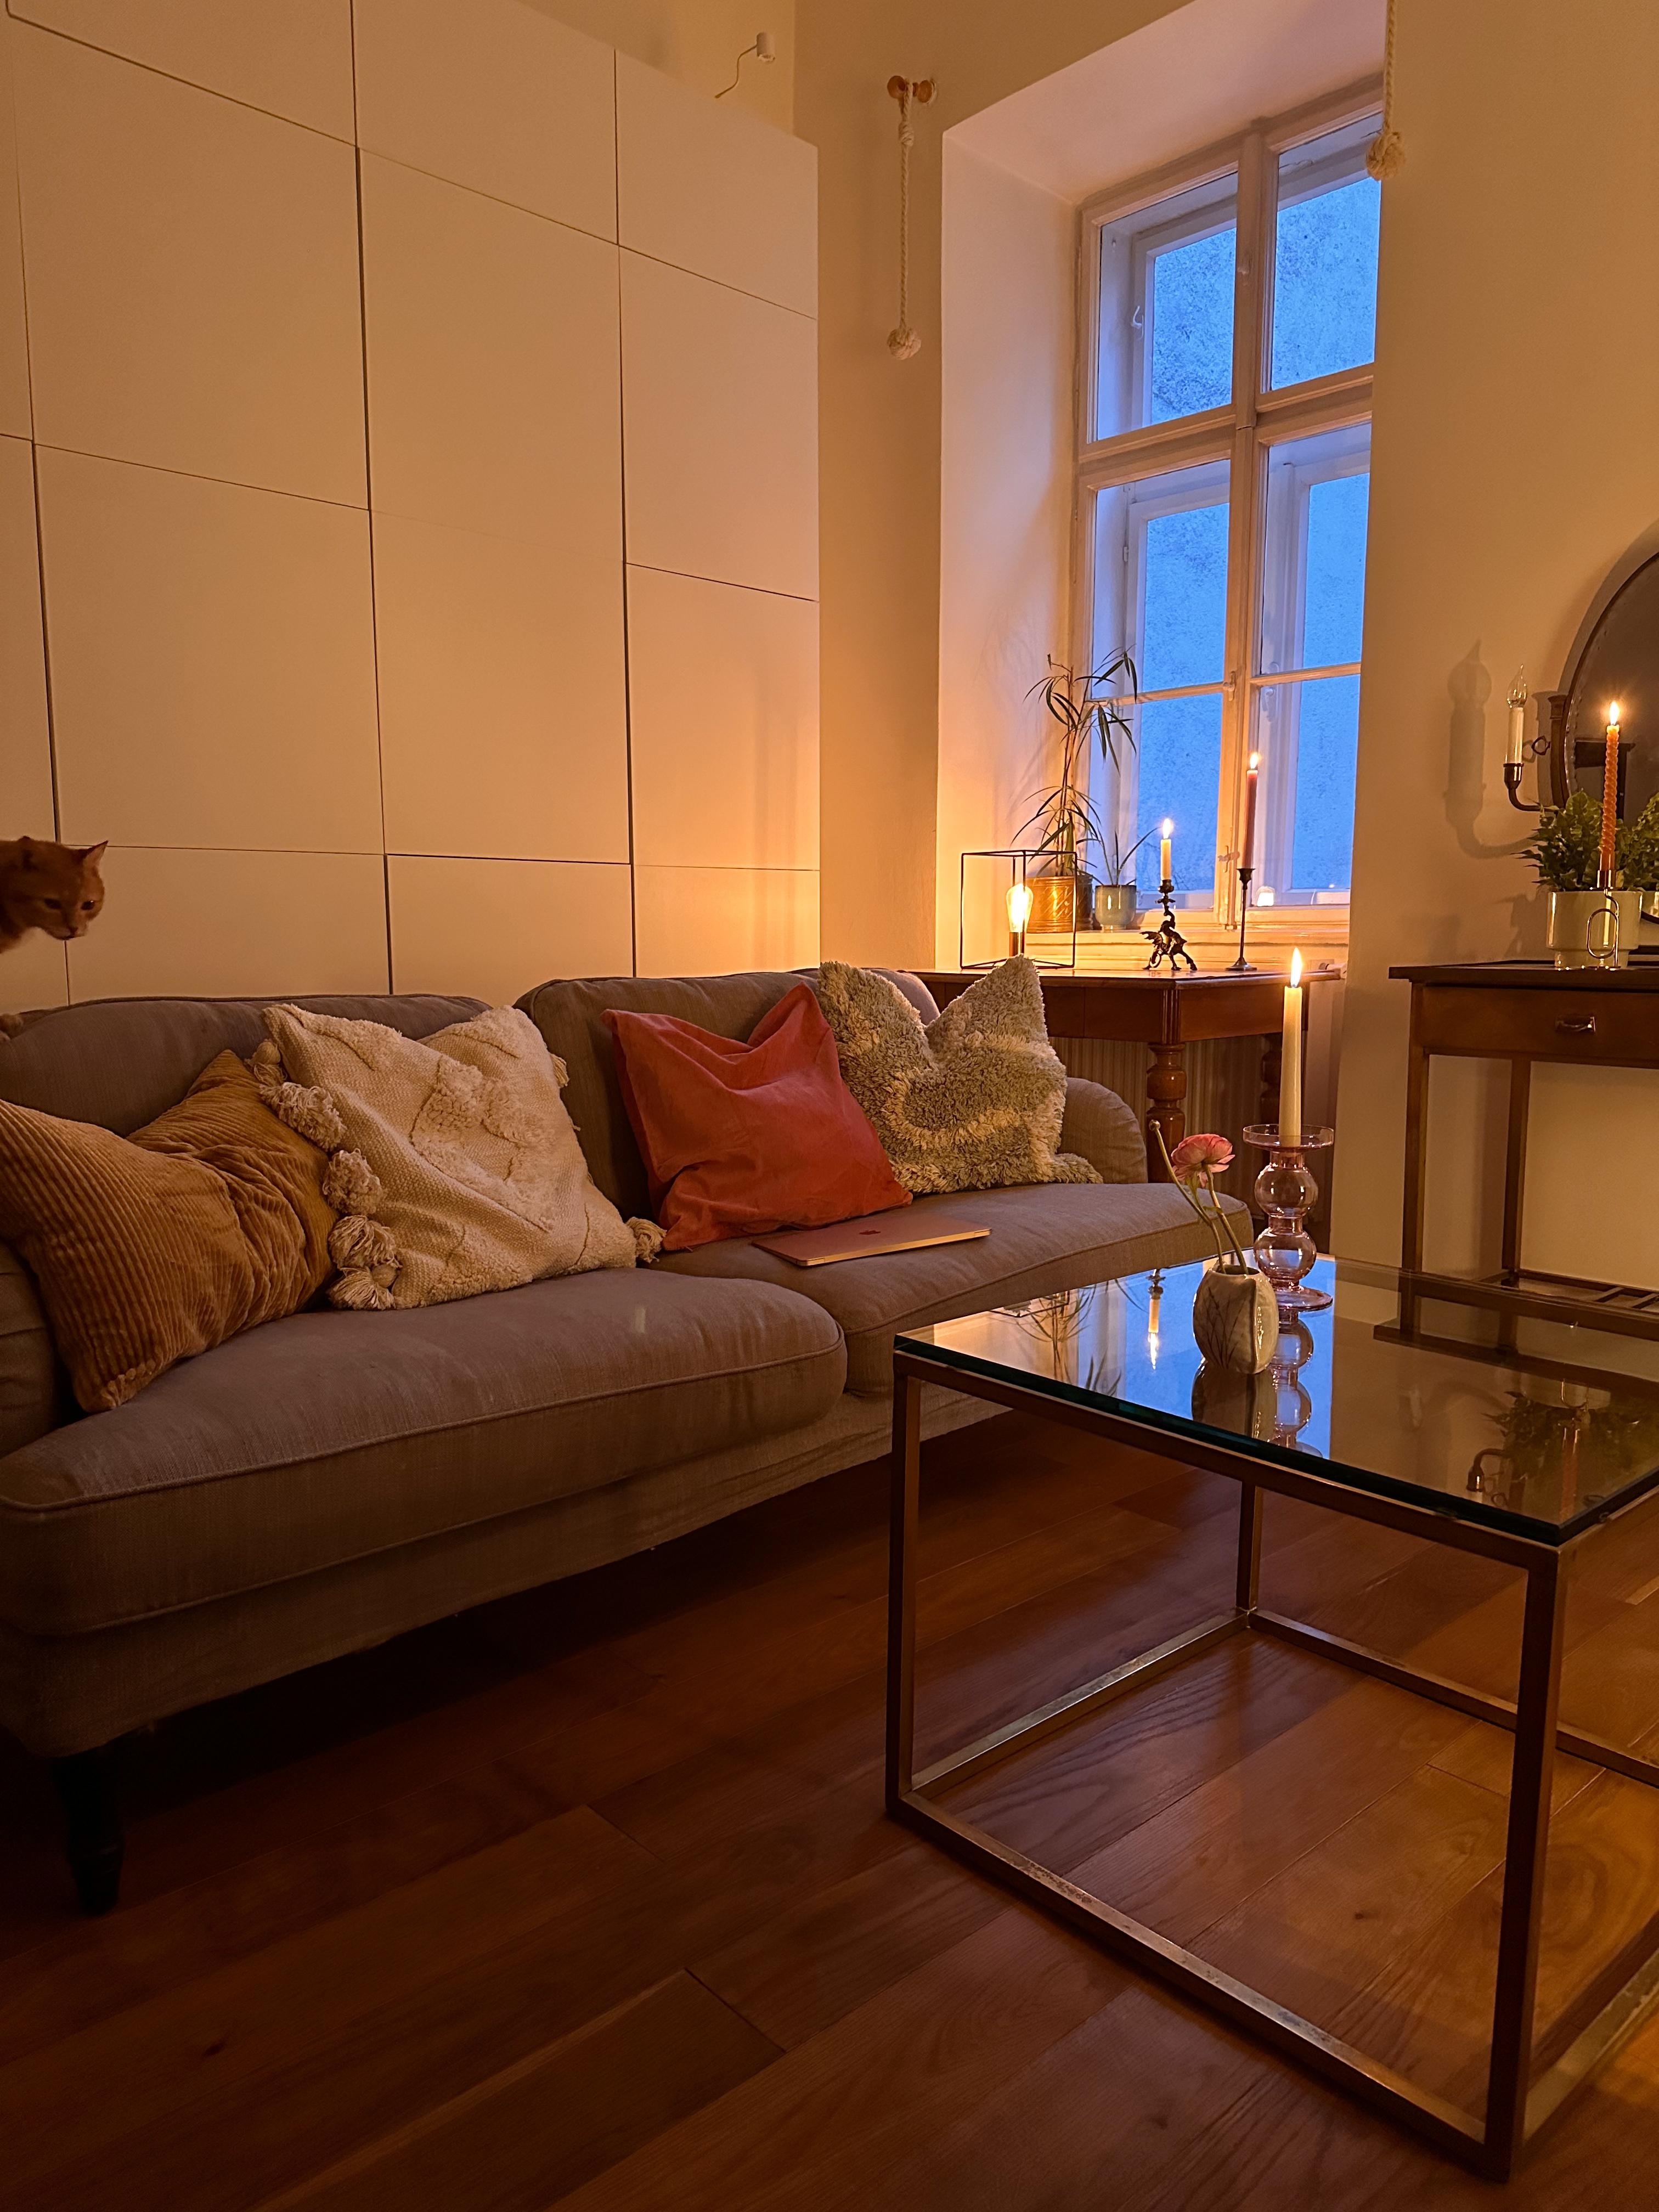 Na, wer entdeckt den Kater?

#couch #sofa #gemütlich #kissen #altbau #wohnzimmer